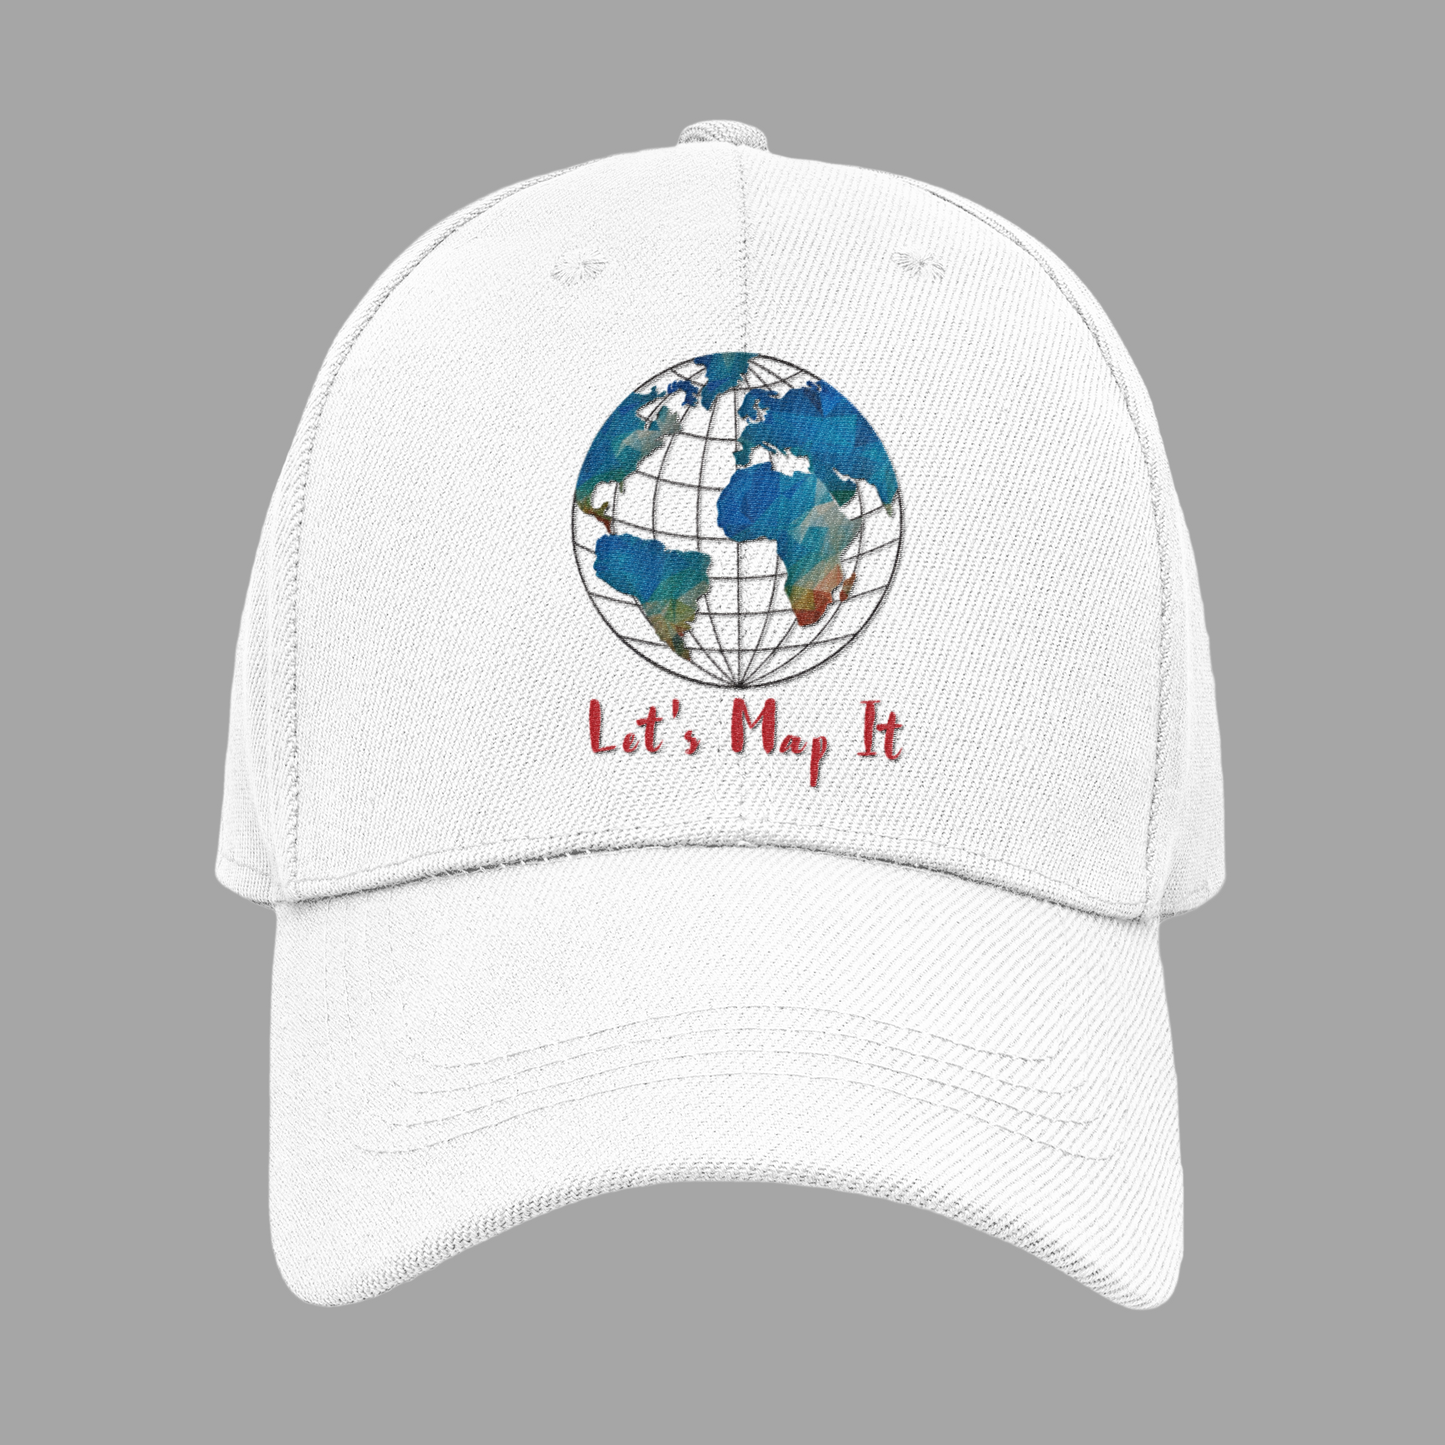 Let's Map It CAP